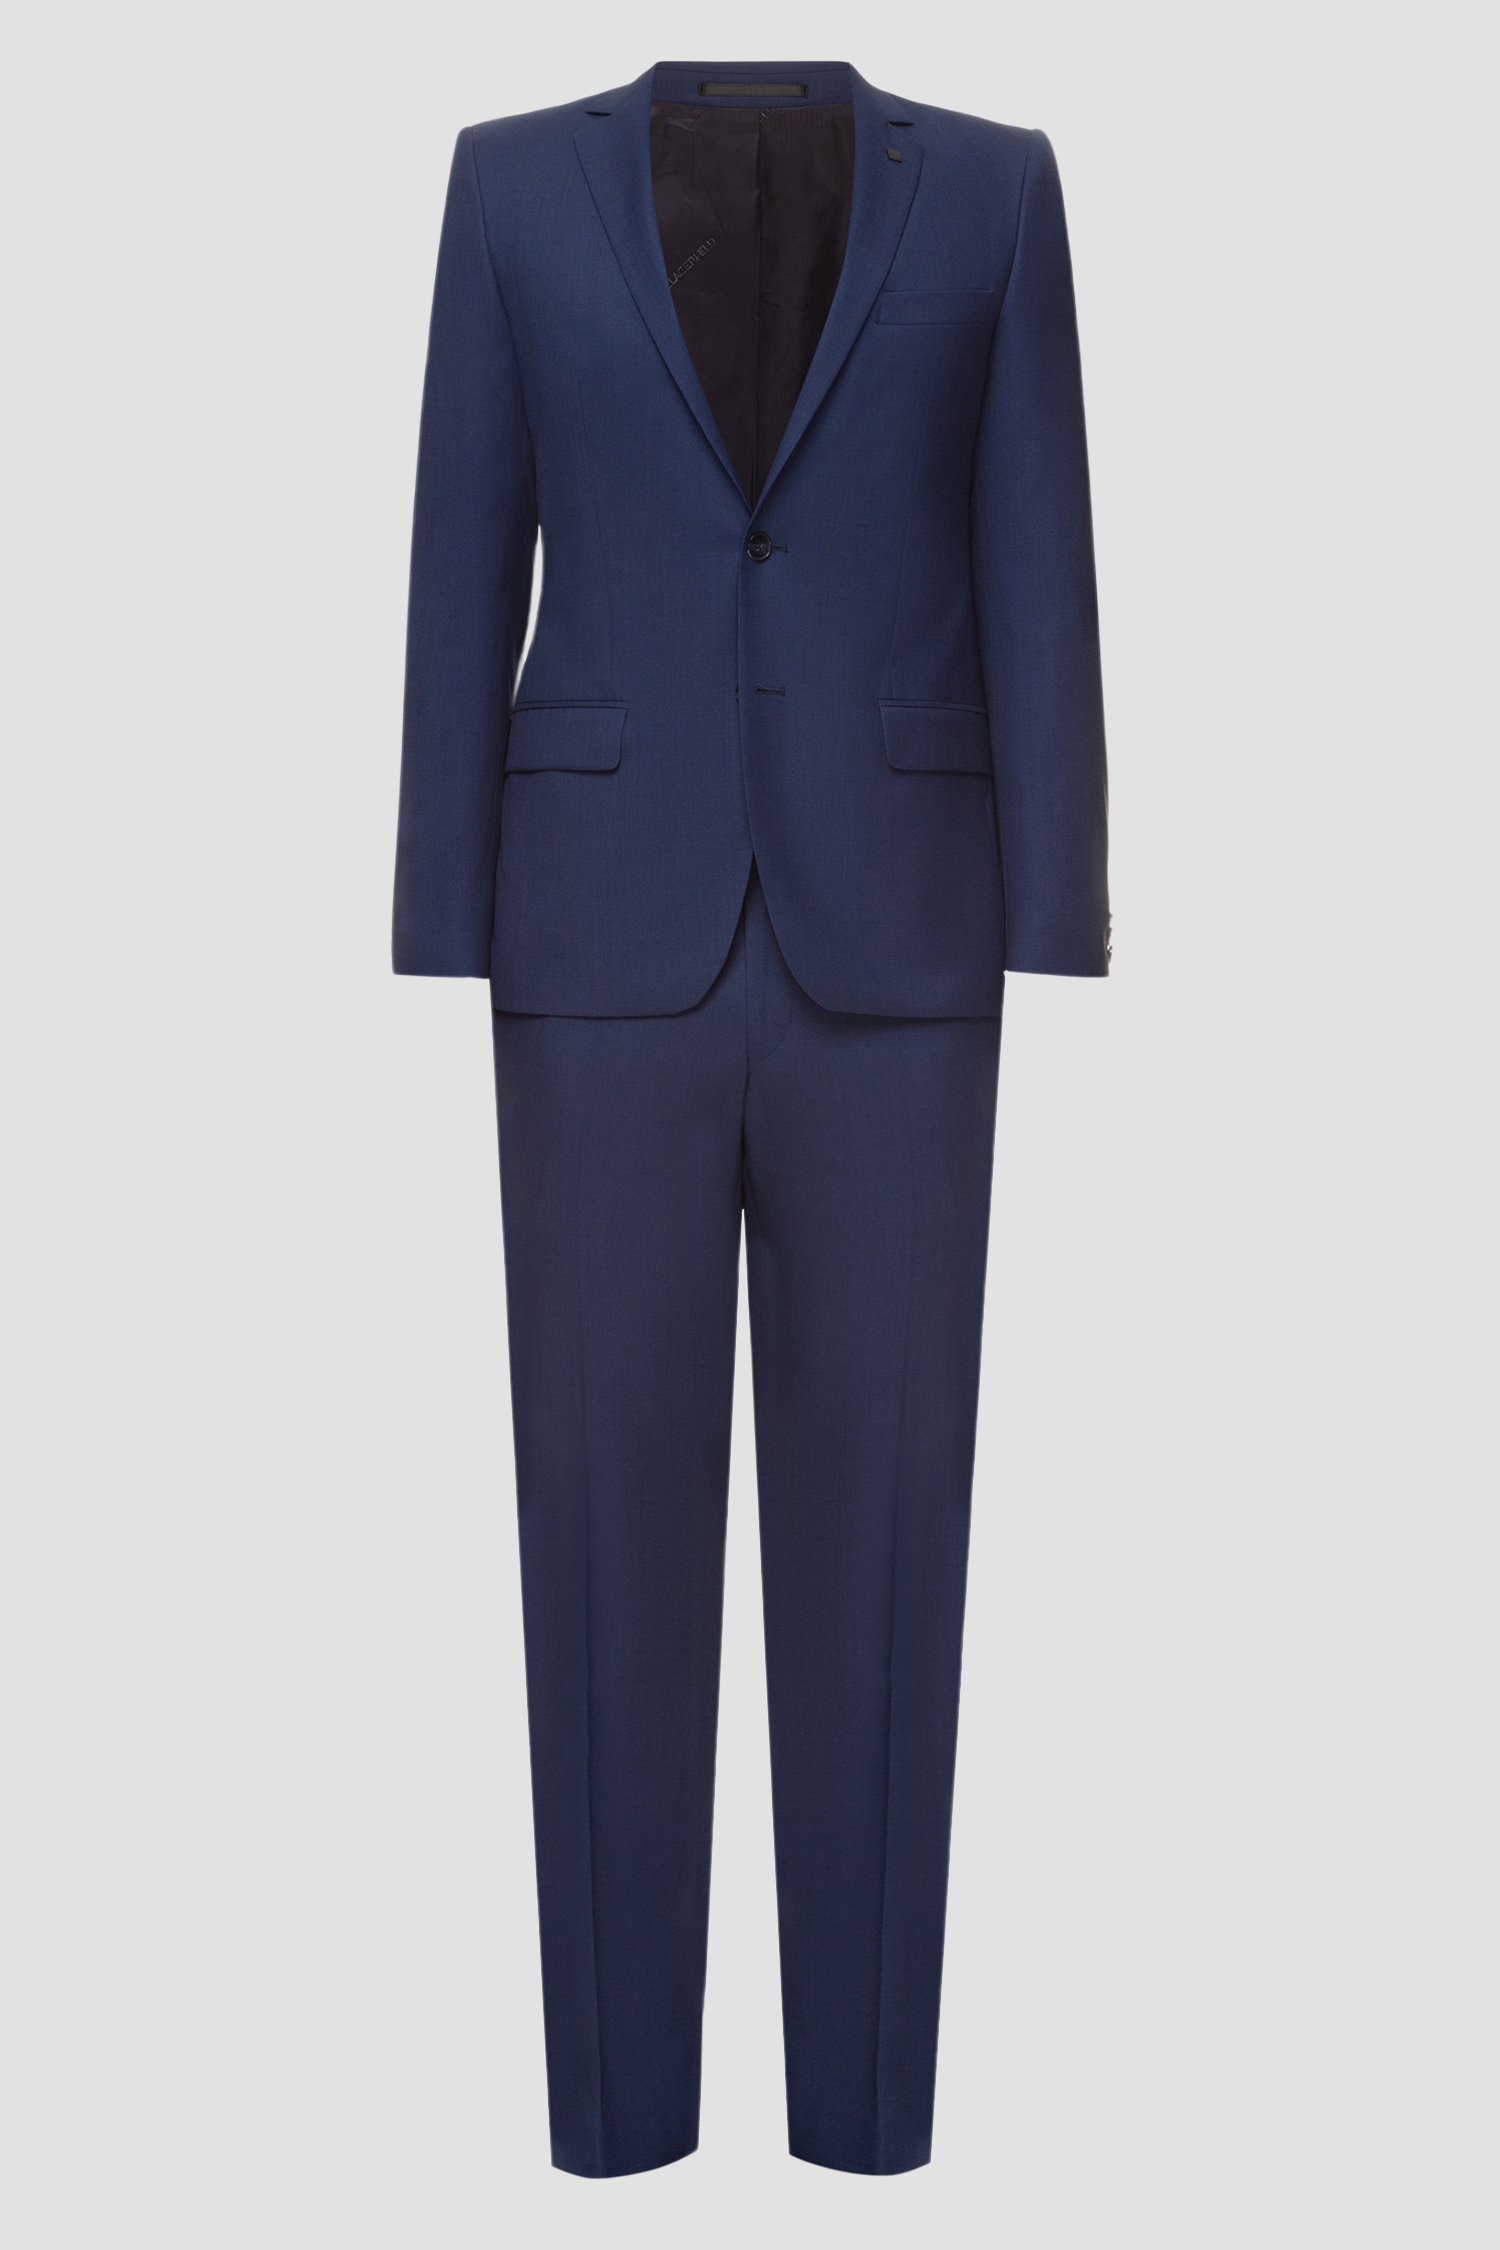 Мужской синий костюм (пиджак, брюки) Karl Lagerfeld 591072.105200;670